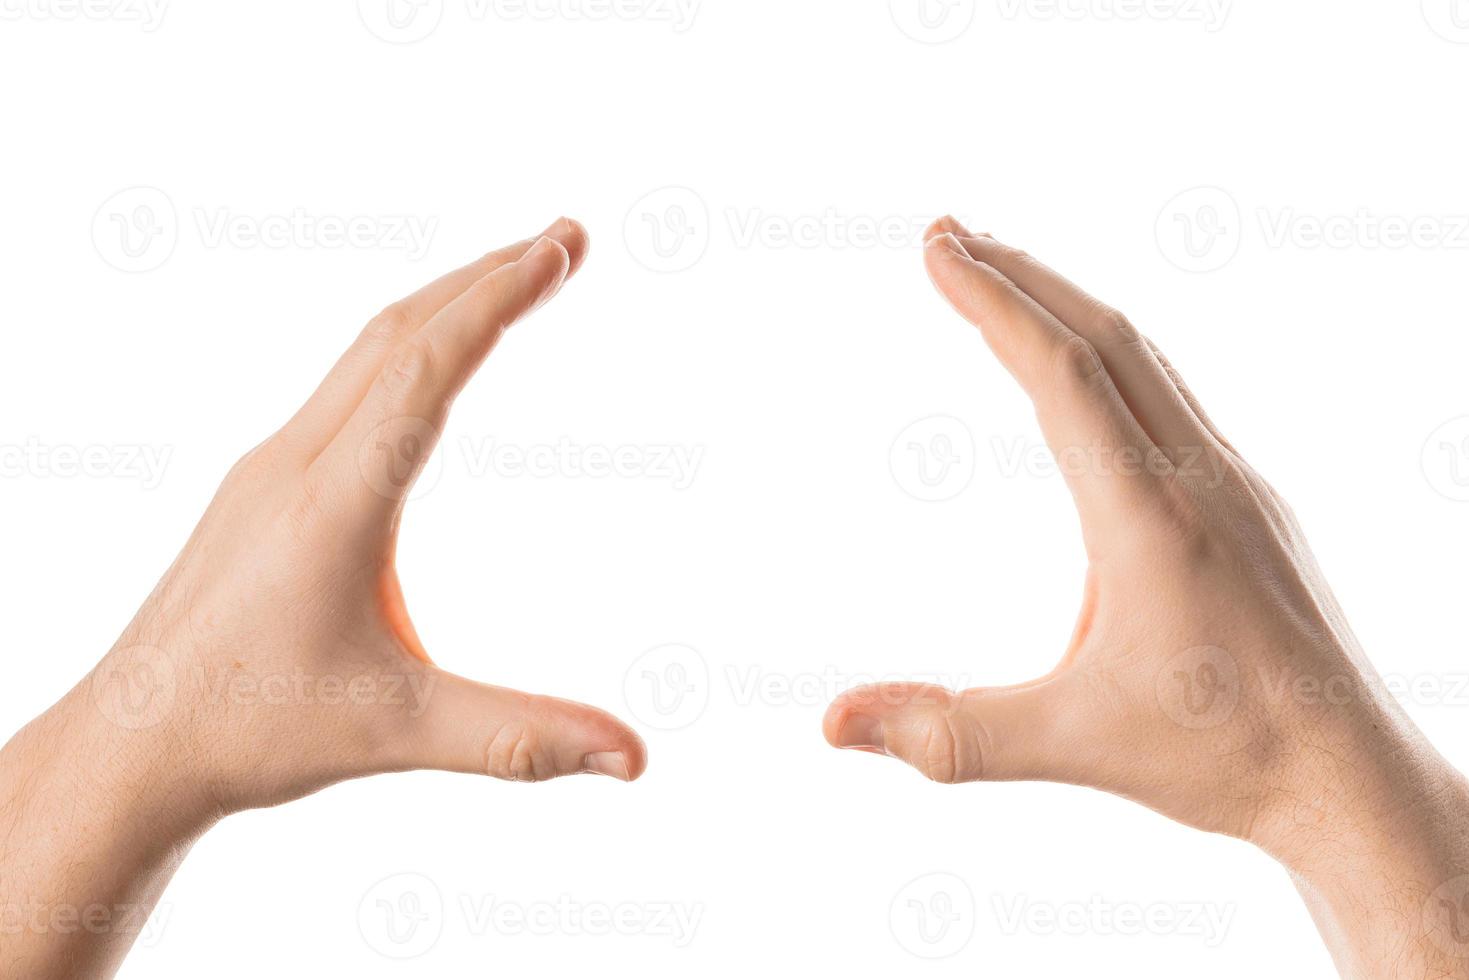 homme main tenir, saisir ou attraper un objet, geste de la main. isolé sur fond blanc. photo